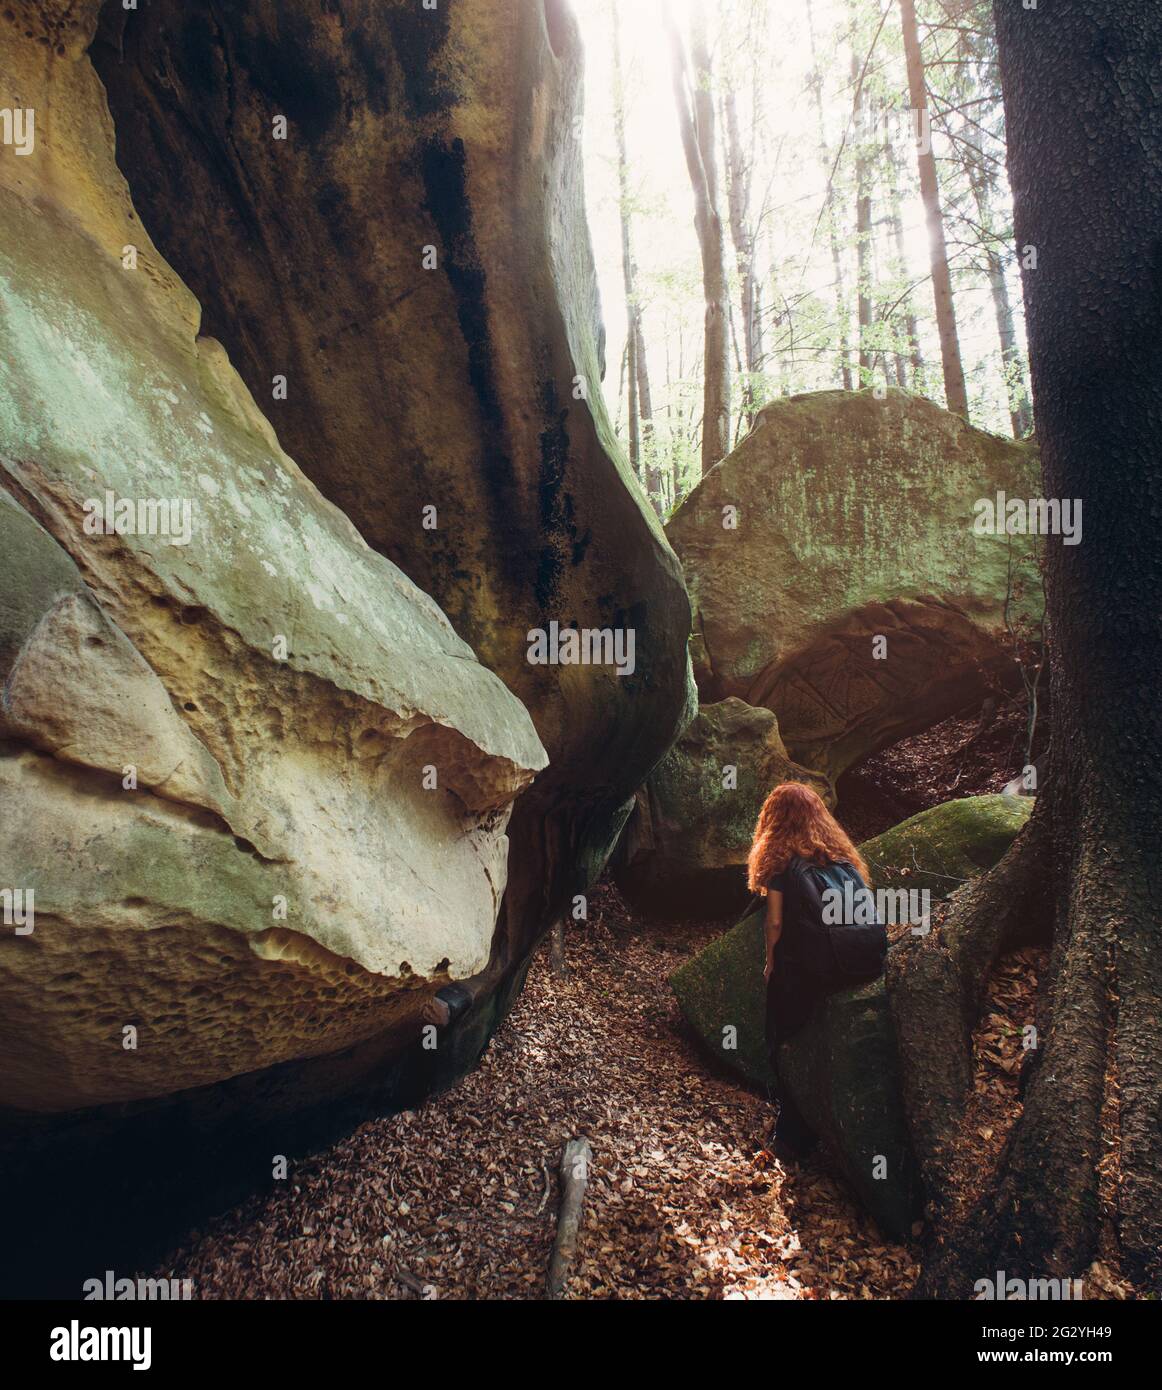 Die rothaarige junge Frau sitzt auf dem riesigen Stein im grünen Frühlingswald und genießt die Aussicht. Konzept des aktiven Lebens. Stockfoto